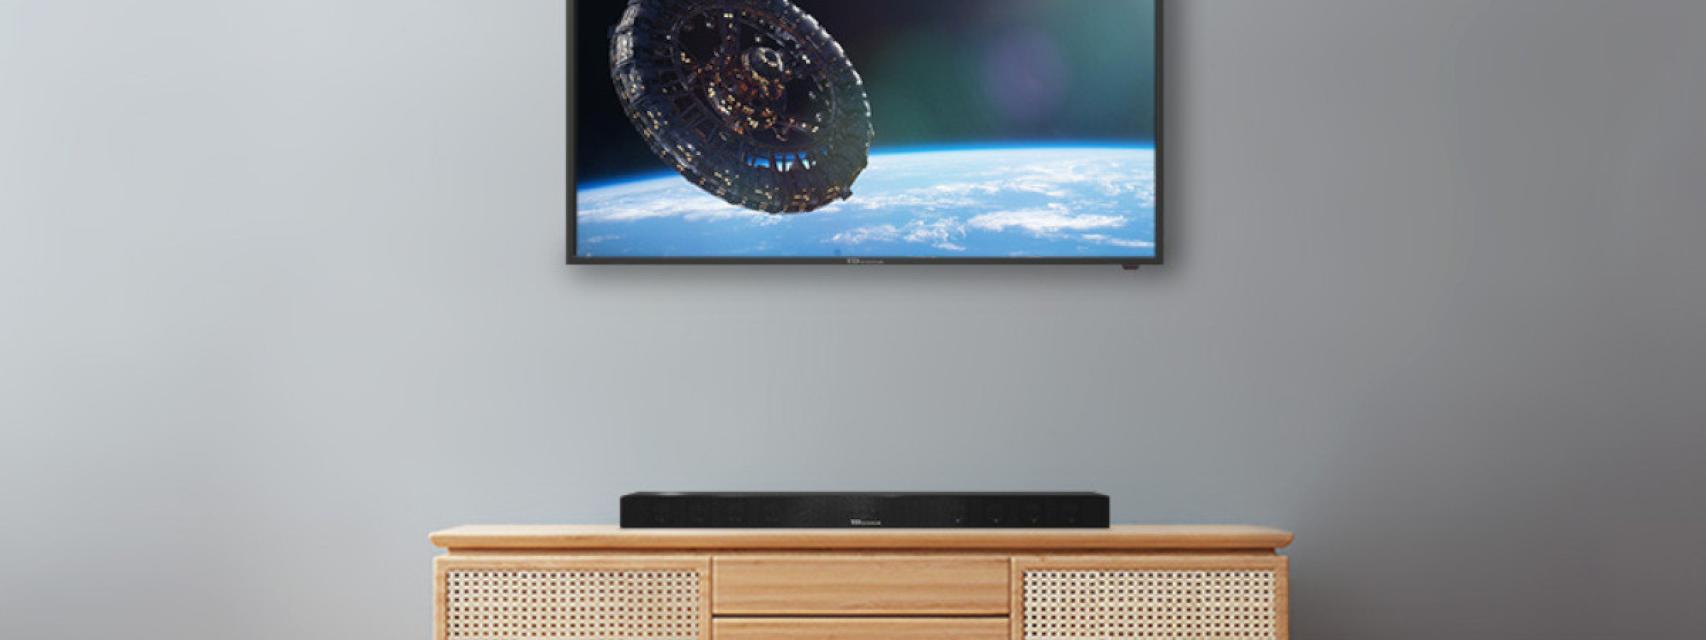 Comprar televisor barato Televisión Smart TV 40¨ TD SYSTEMS Full